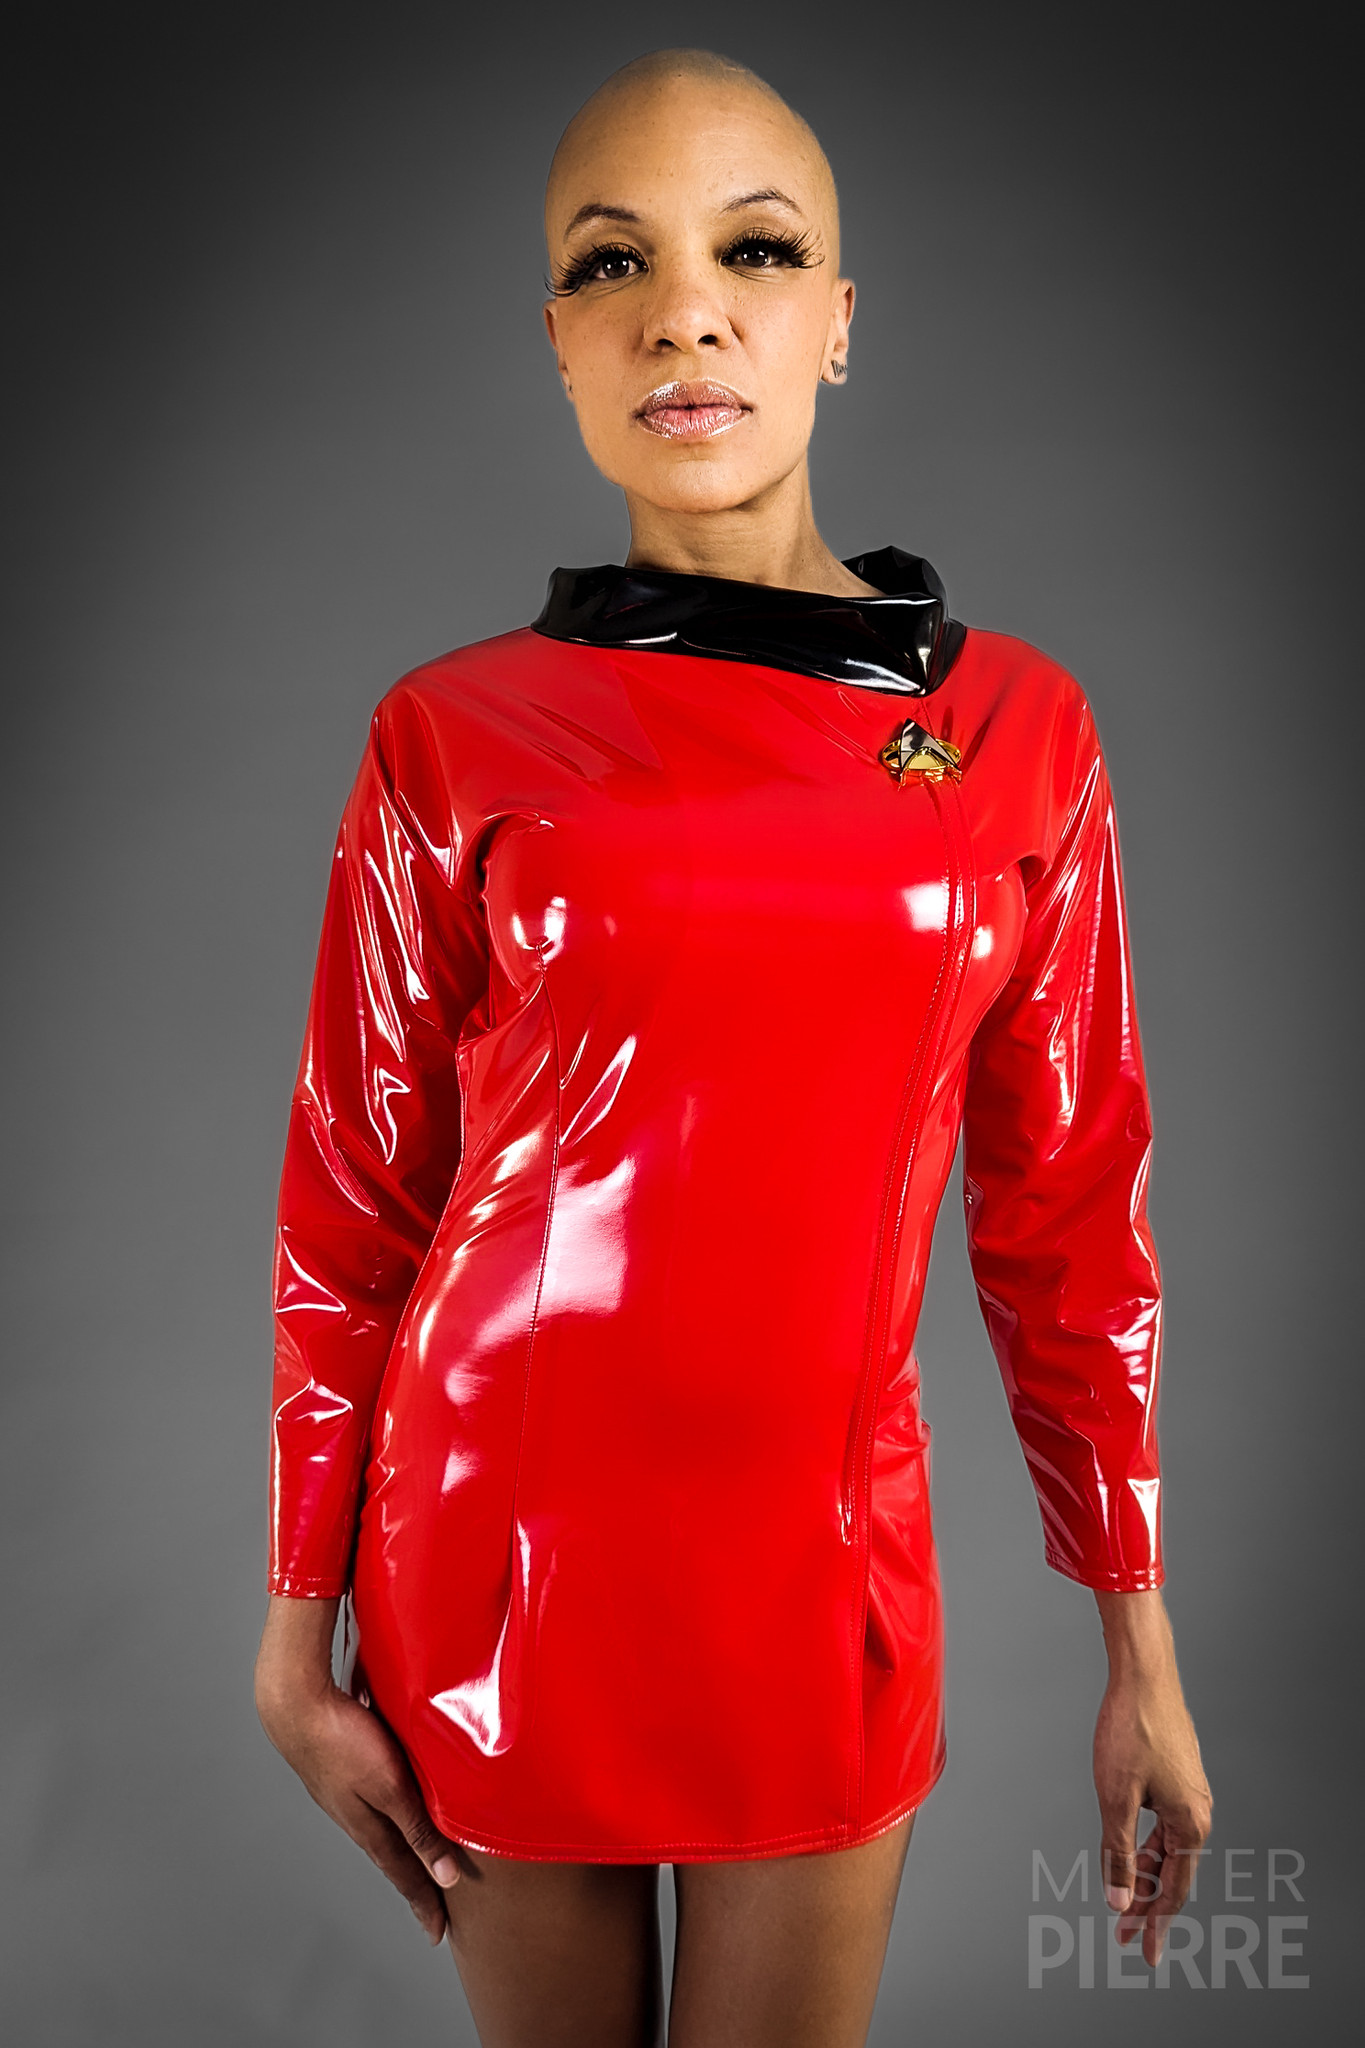 The Nichelle Trek Original Series Dress